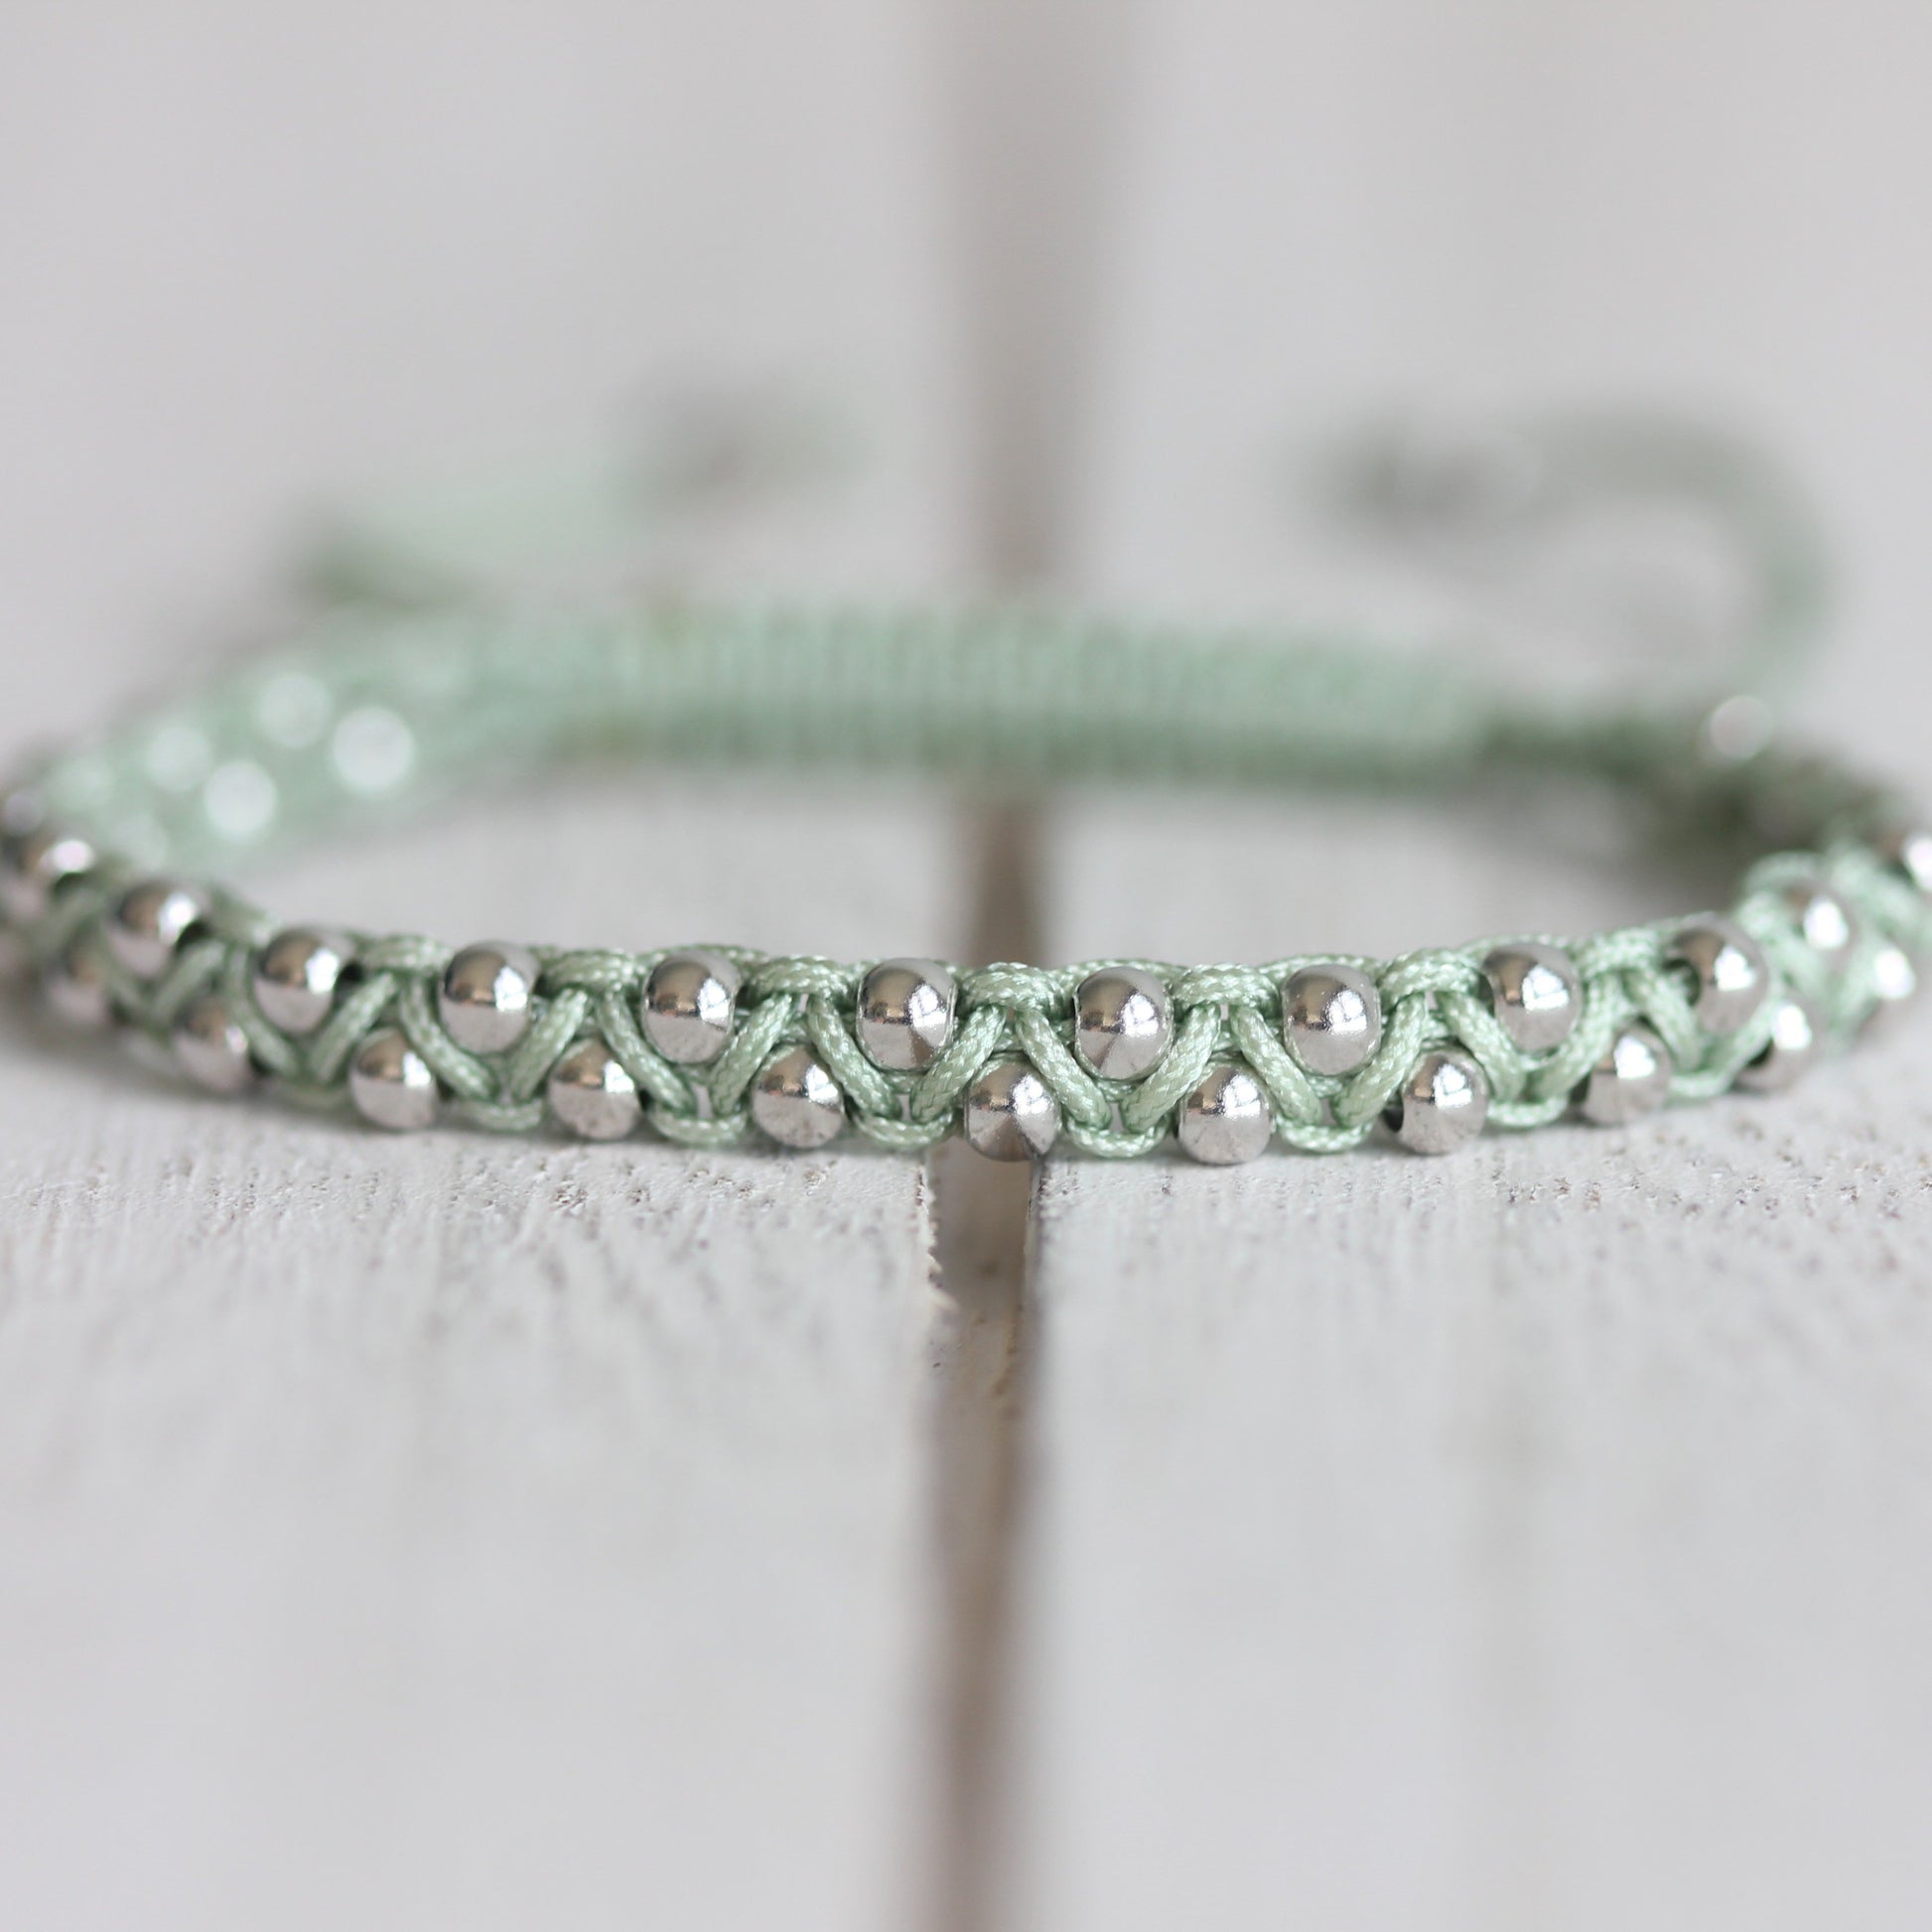 Mint Silver Bracelet, Silver Bracelet for Women, Minimal Bracelet, Silver Jewelry, Silver Bracelet